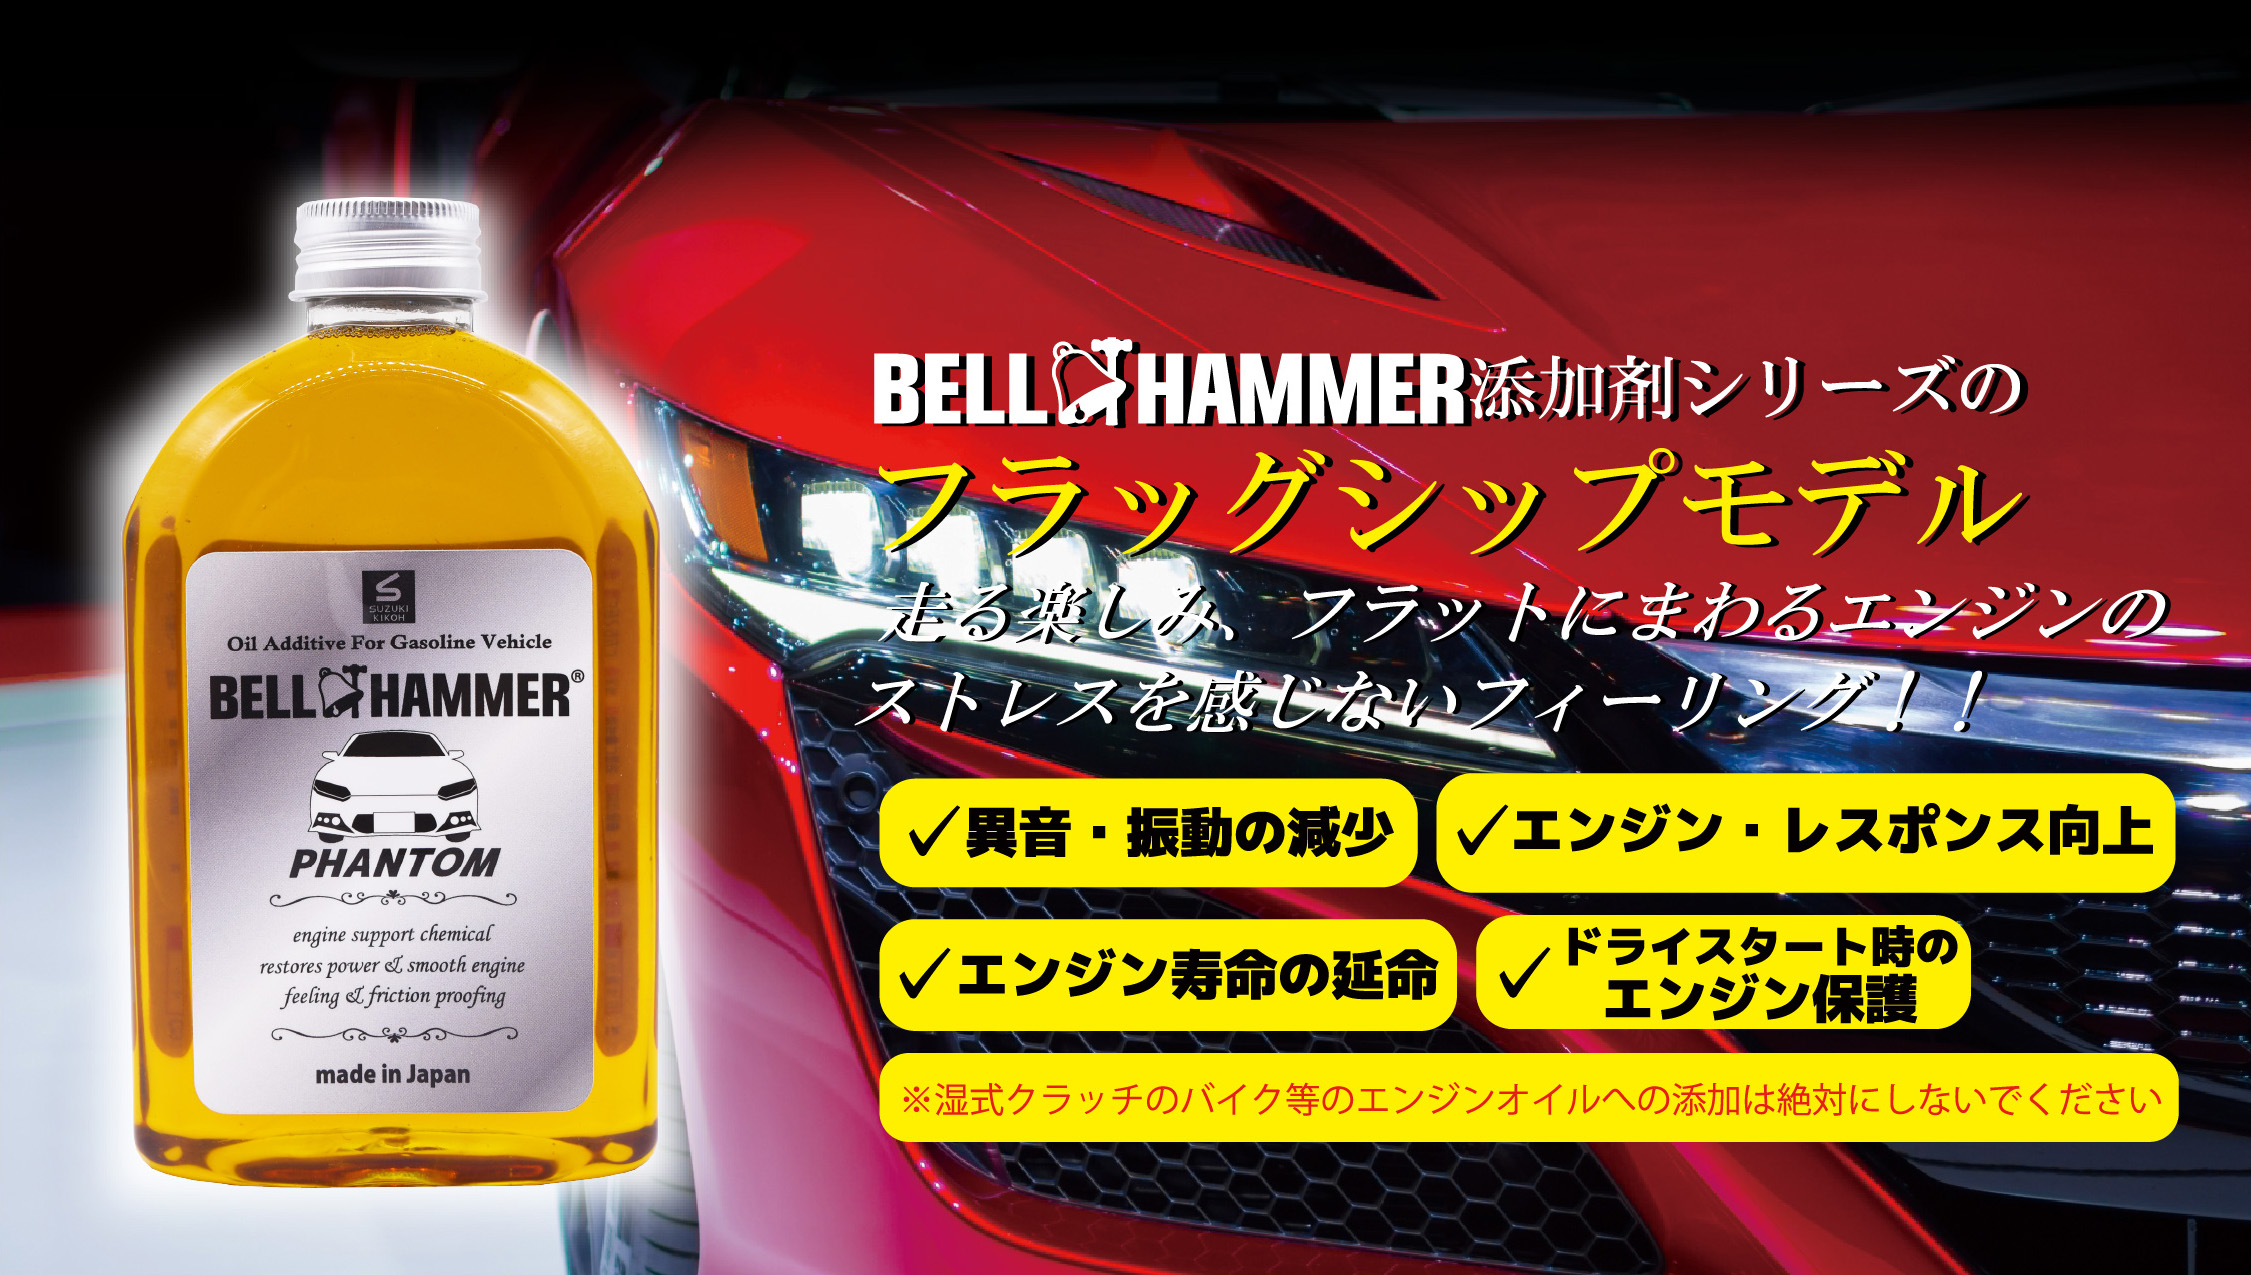 BELL HANMMER添加剤シリーズのフラッグシップモデル